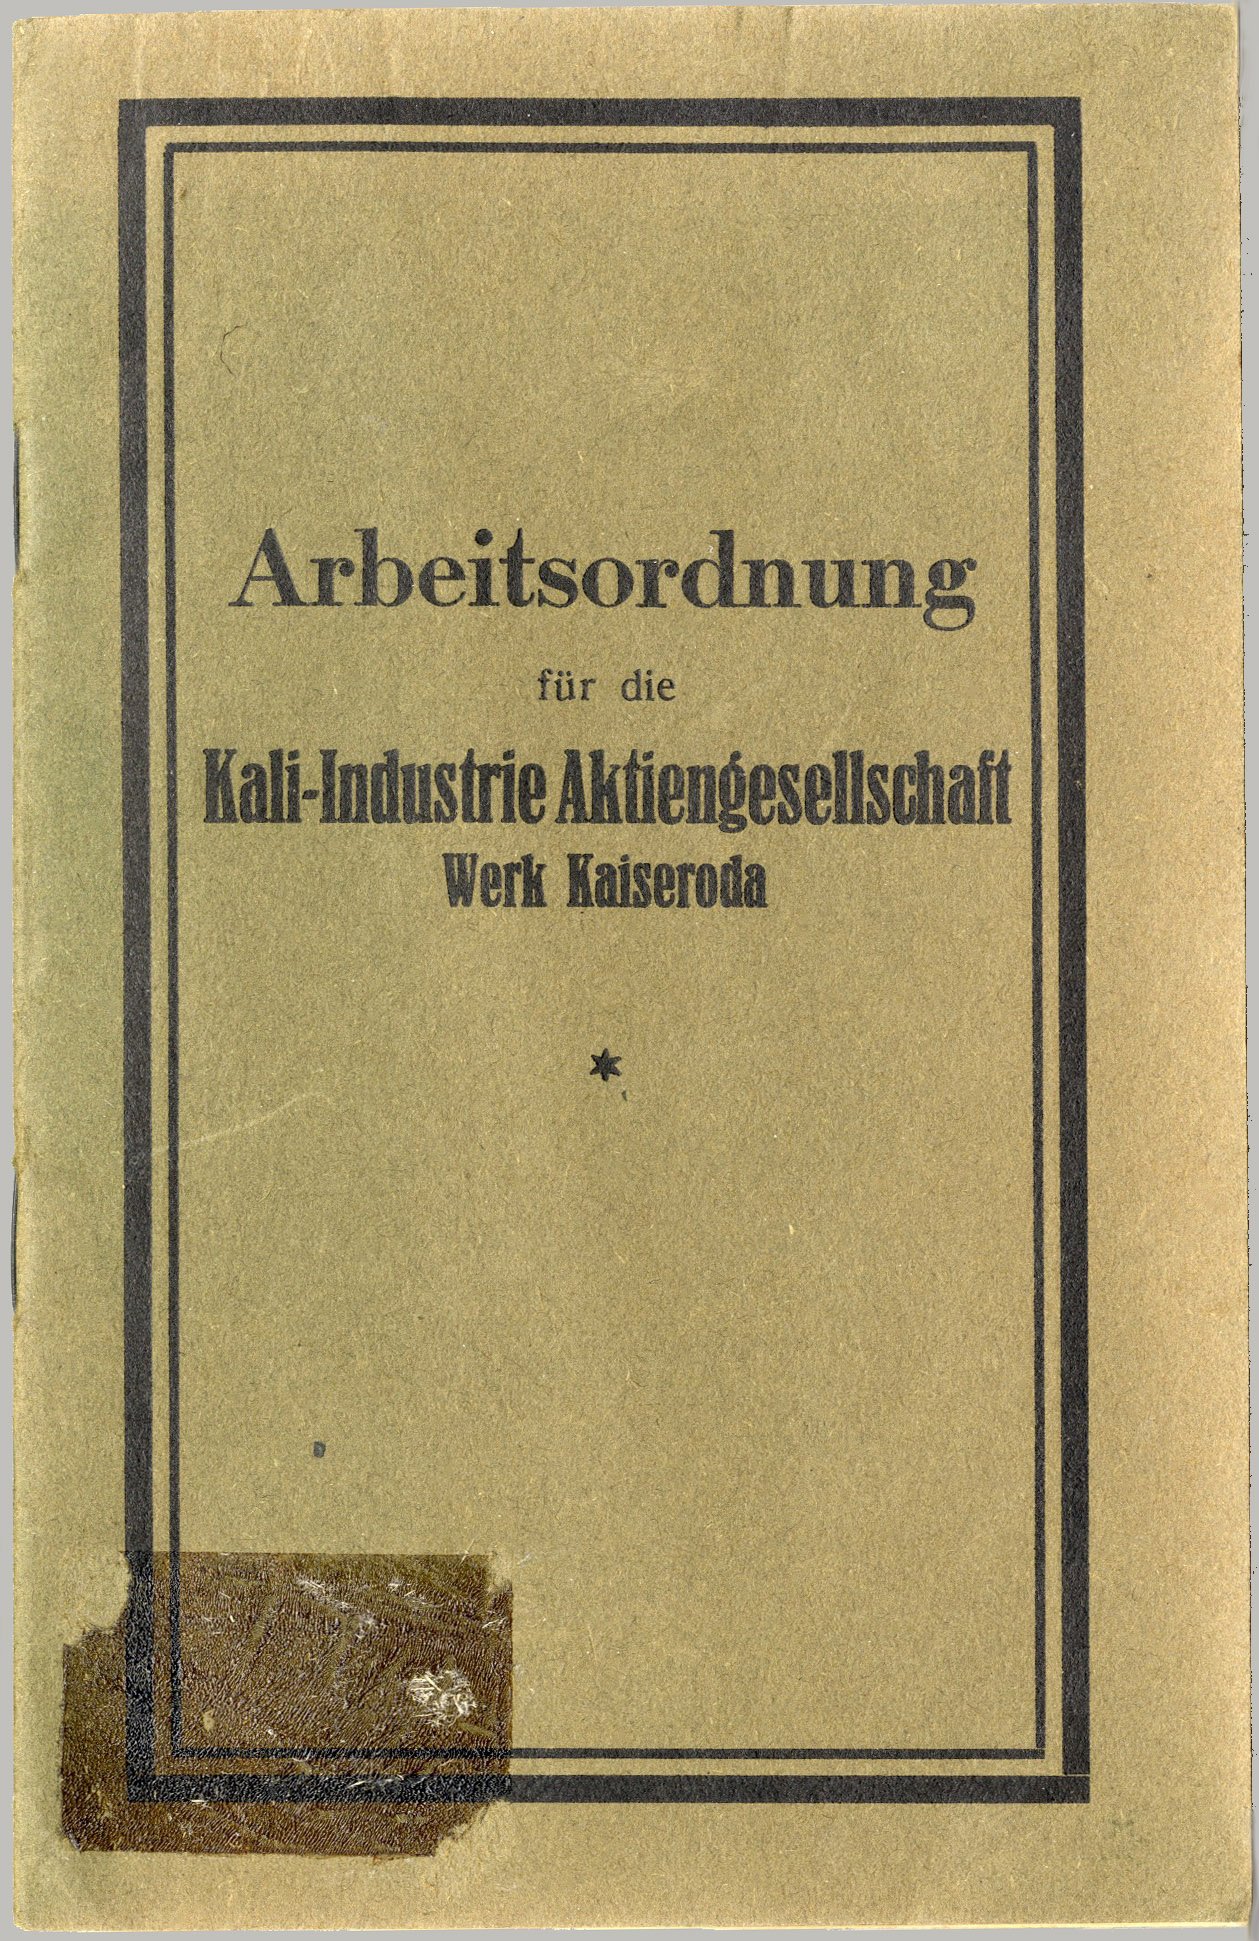 Arbeitsordnung für die Kali-Industrie Aktiengesellschaft Werk Kaiseroda (Werra-Kalibergbau-Museum, Heringen/W. CC BY-NC-SA)